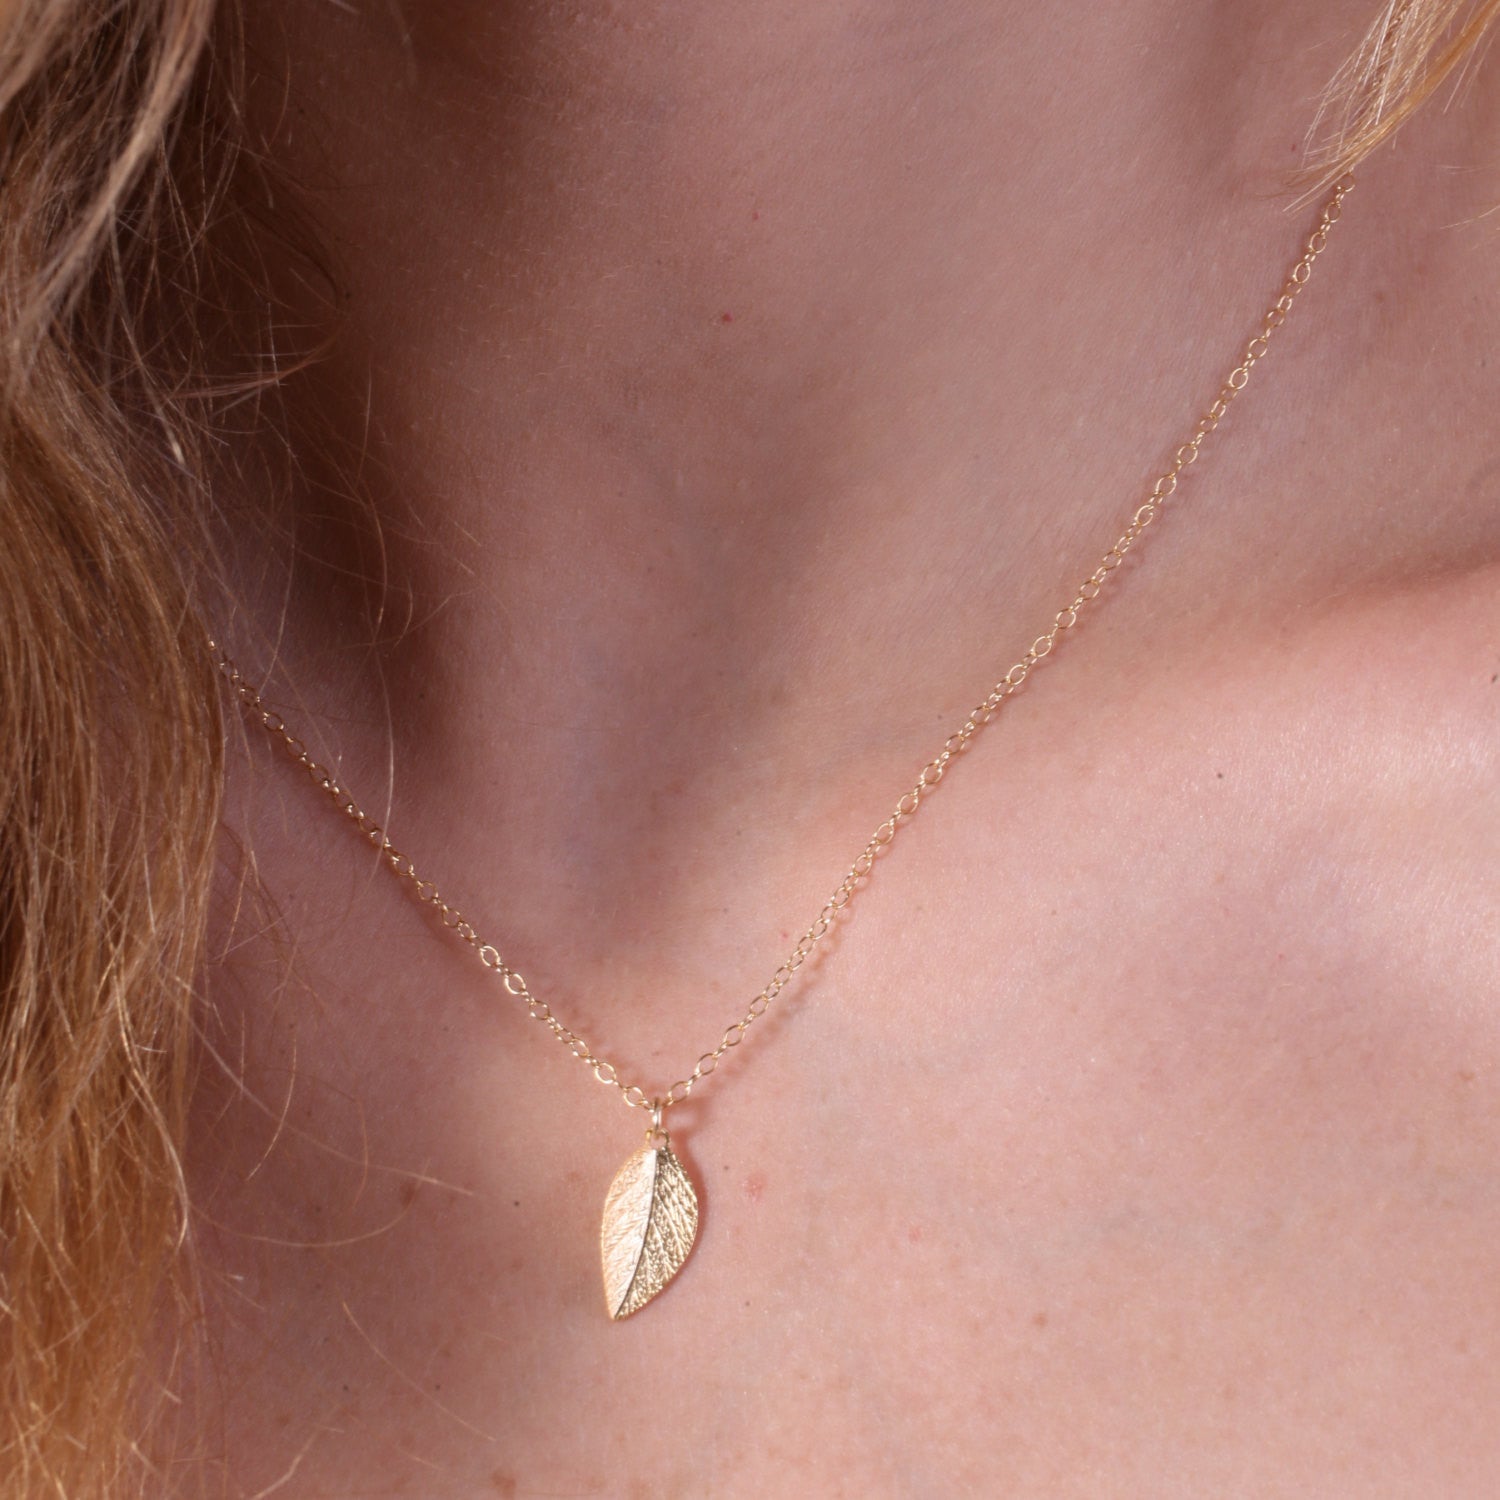  Gold leaf necklace